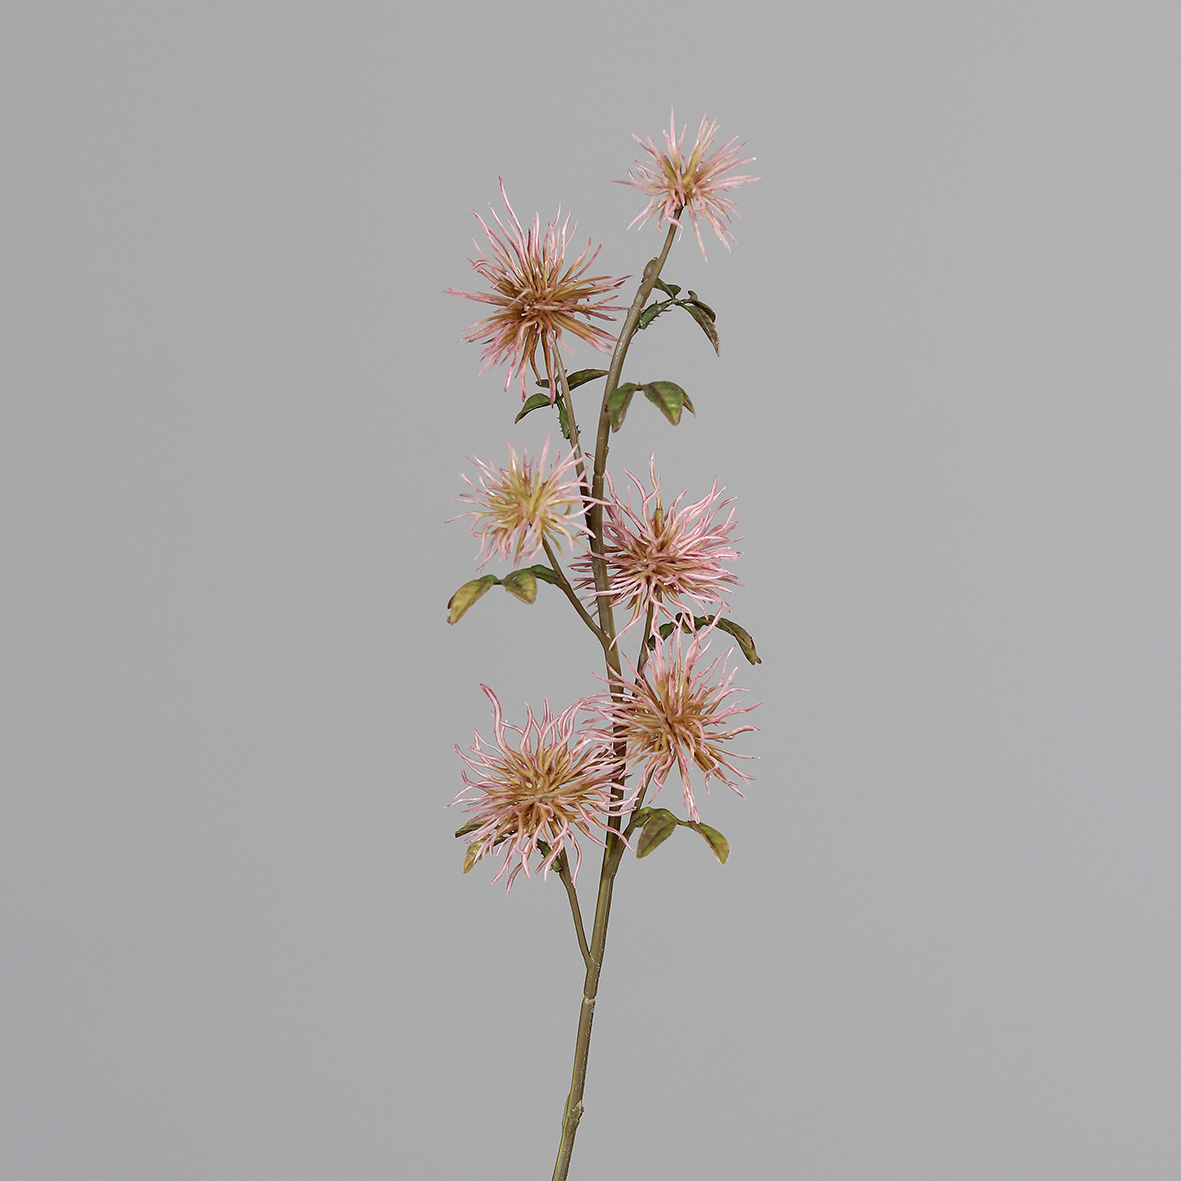 Zaubernusszweig / Hamameliszweig 52cm rosa DP Kunstblumen Kunstzweig künstliche Blumen Hamamelis